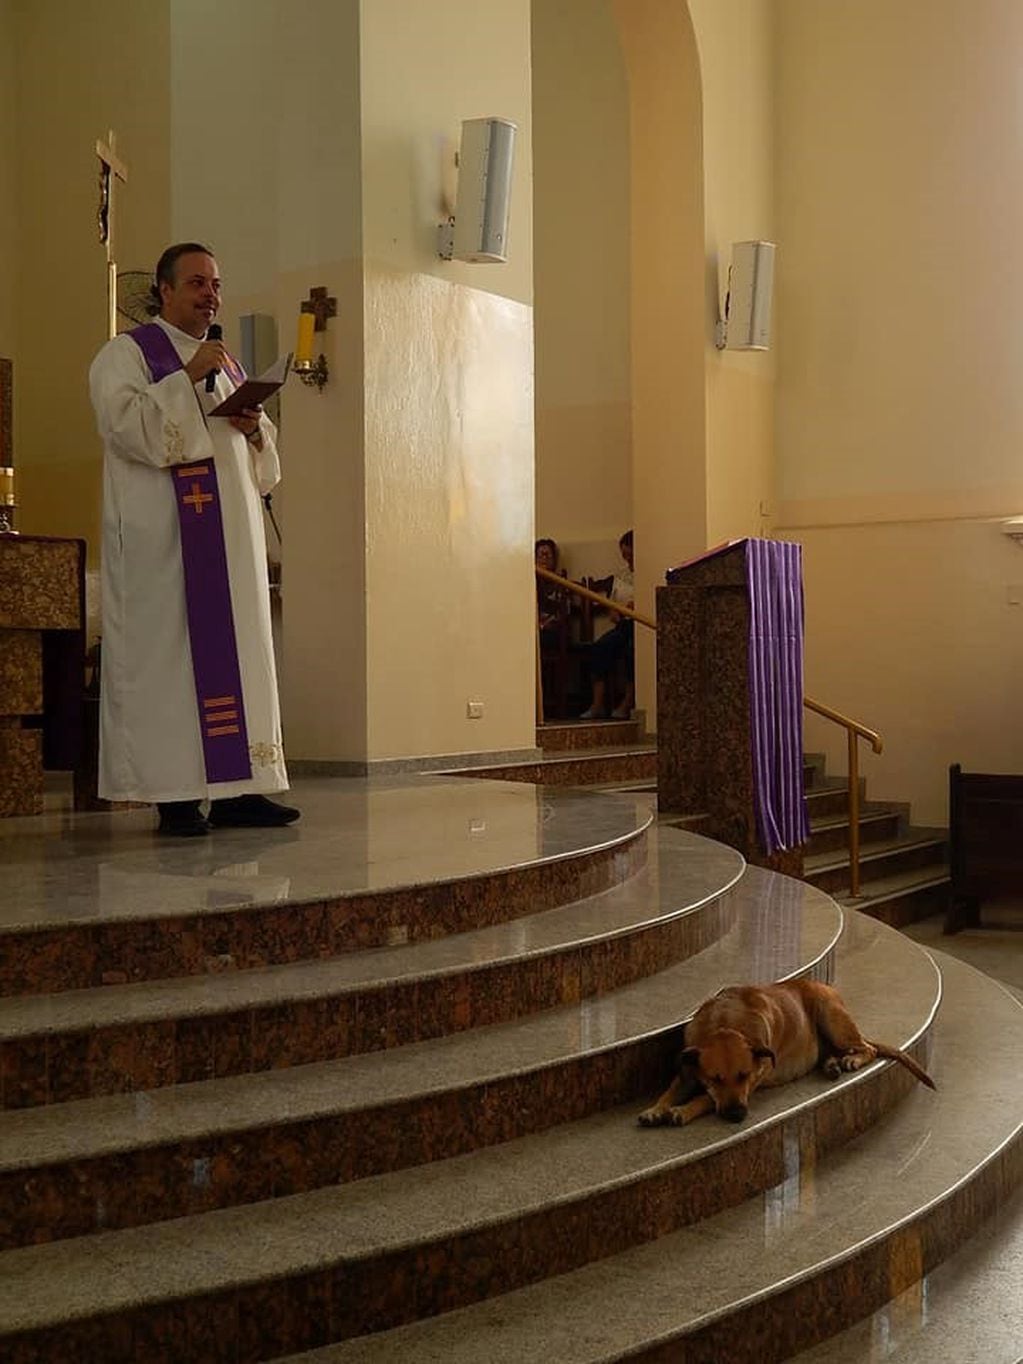 El párroco y su amor por los perros (Foto: Facebook/PadreJoao Paulo Araujo Gomes).